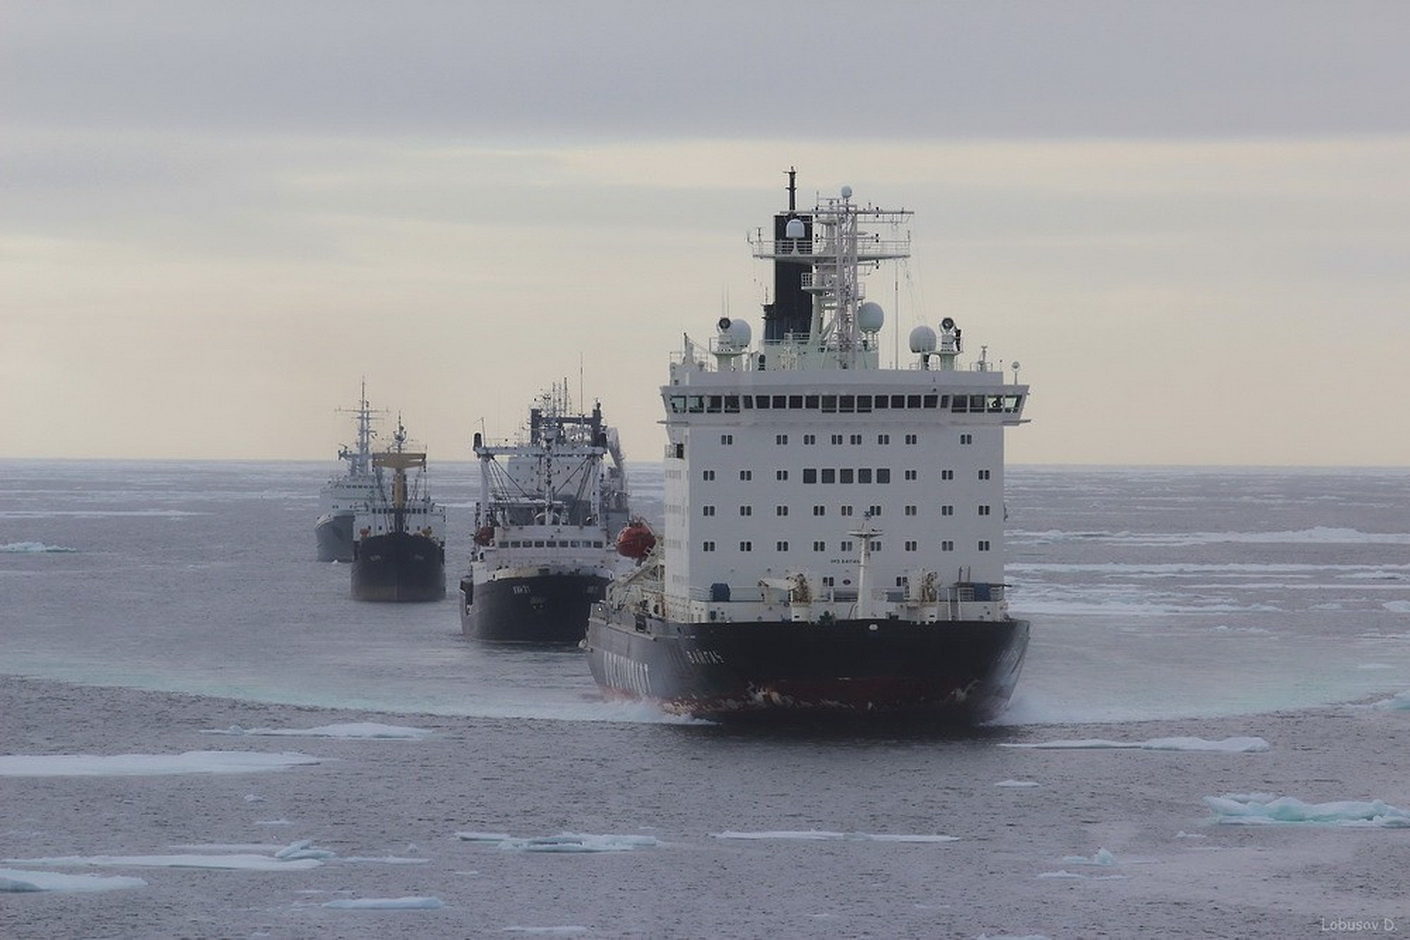 Караванами пароходами. Северный морской путь Караван судов. Северный морской путь в Арктике. Северный морской путь ледоколы. Арктика Севморпуть.